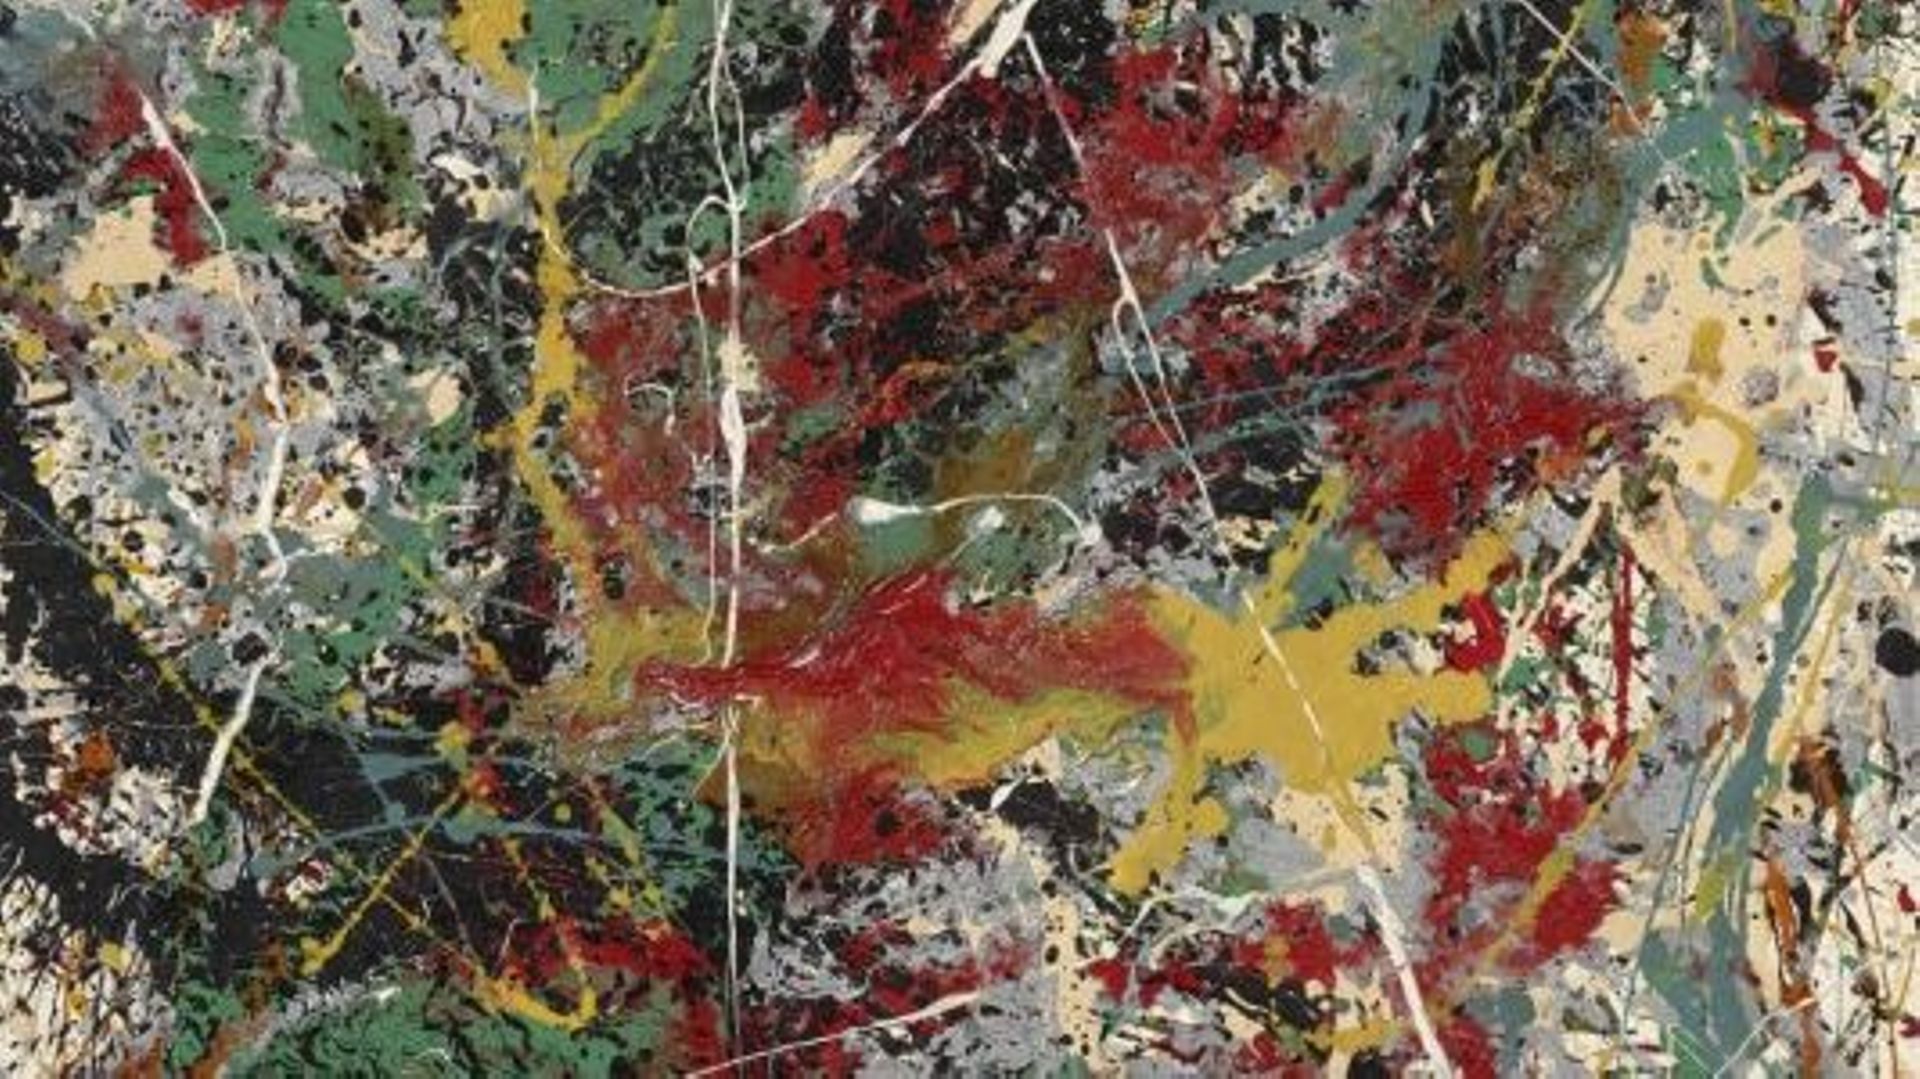 "Number 31" de Jackson Pollock passera sous le marteau, le 12 mai, durant la prochaine vente du soir new-yorkaise de Christie’s dédiée à l’art du XXe siècle.